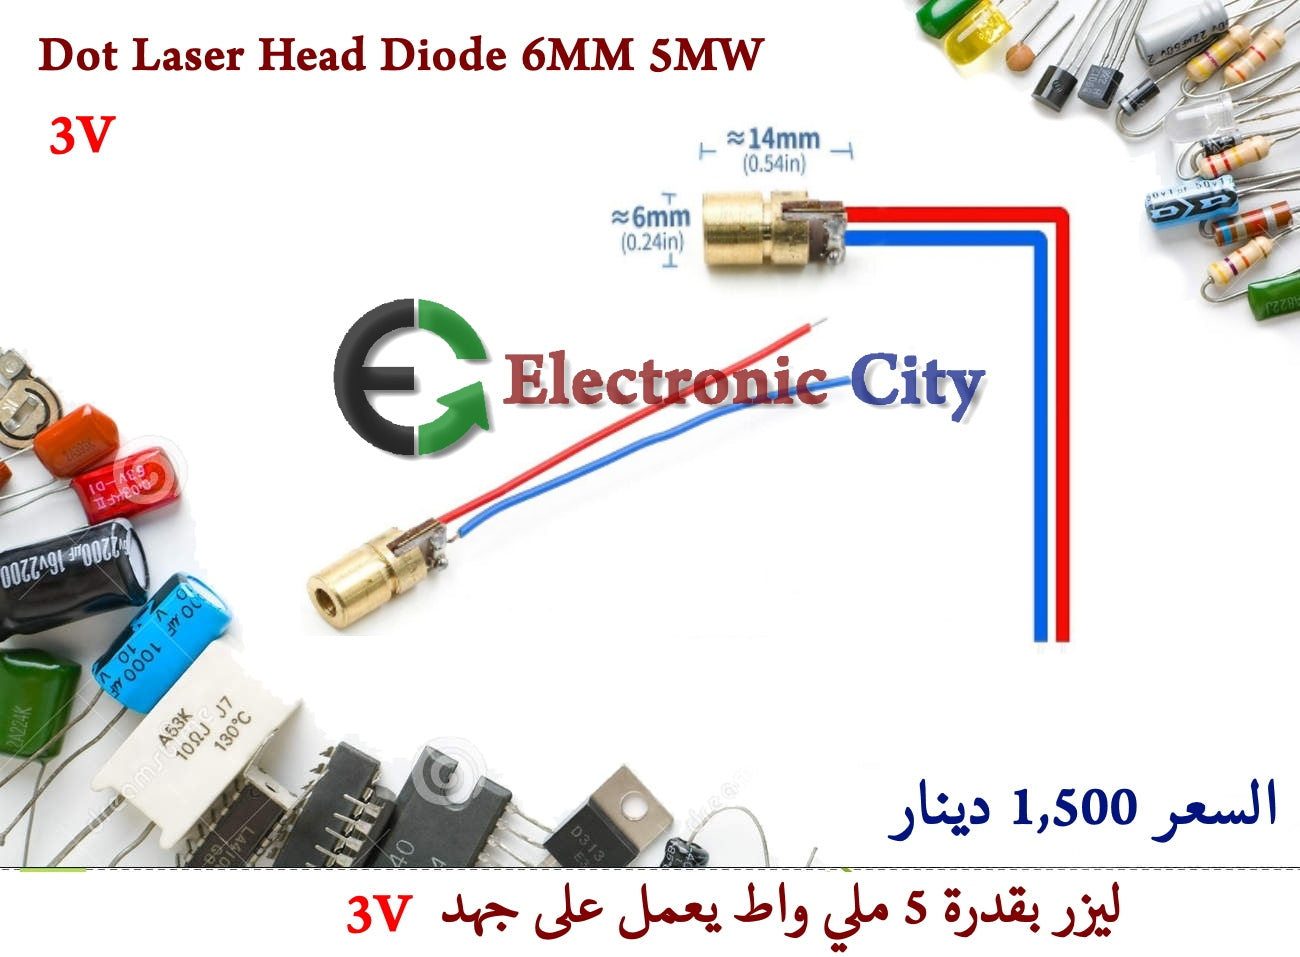 Dot Laser Head Diode 6MM 5MW 3V